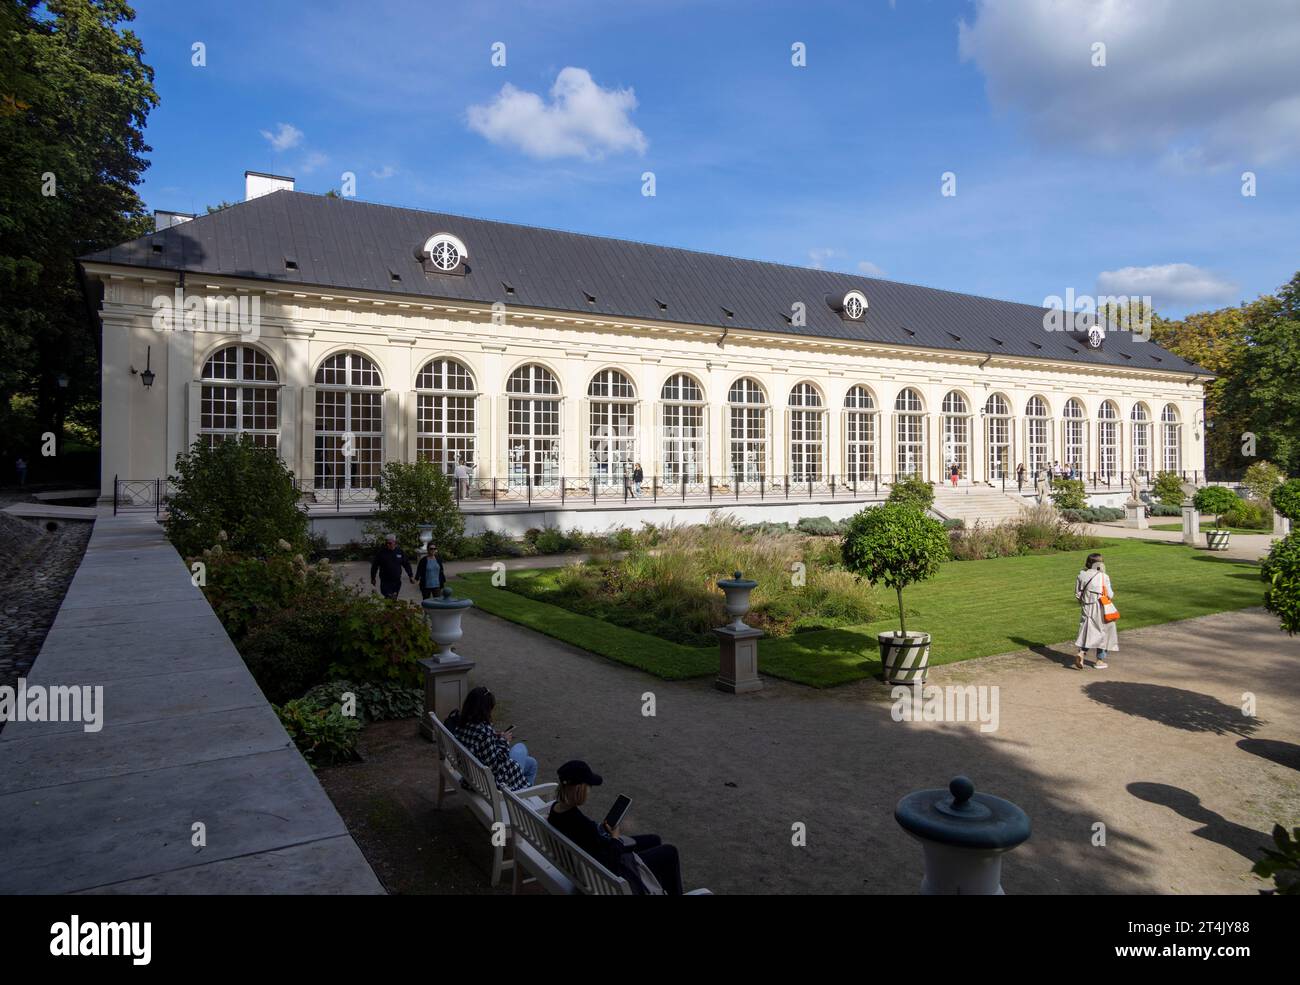 Le Théâtre Royal et la Vieille Orangerie, Parc Lazianki, Varsovie Pologne Banque D'Images